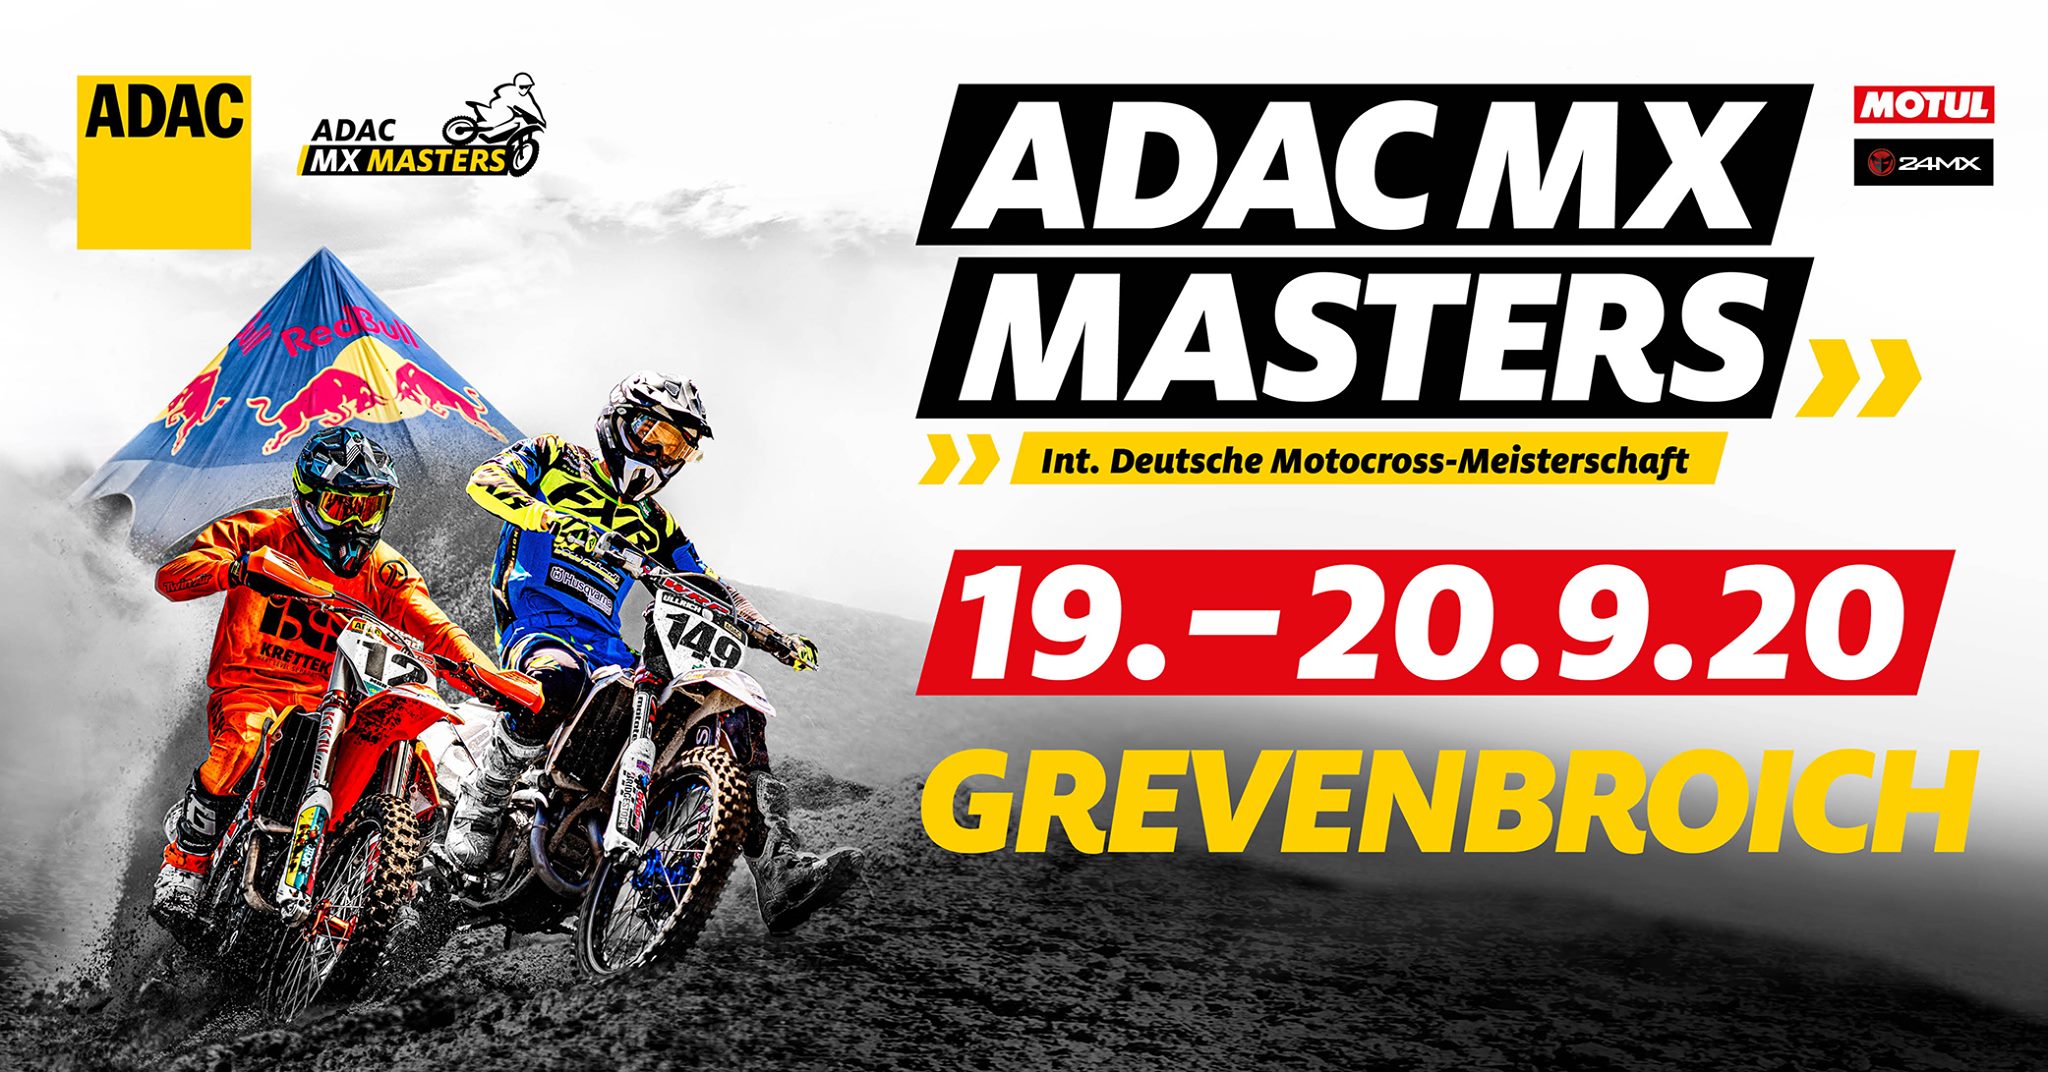 ADAC MX Masters Grevenbroich - Zeitplan, Starterlisten, Livestream, Live- Timing und Event Guide!